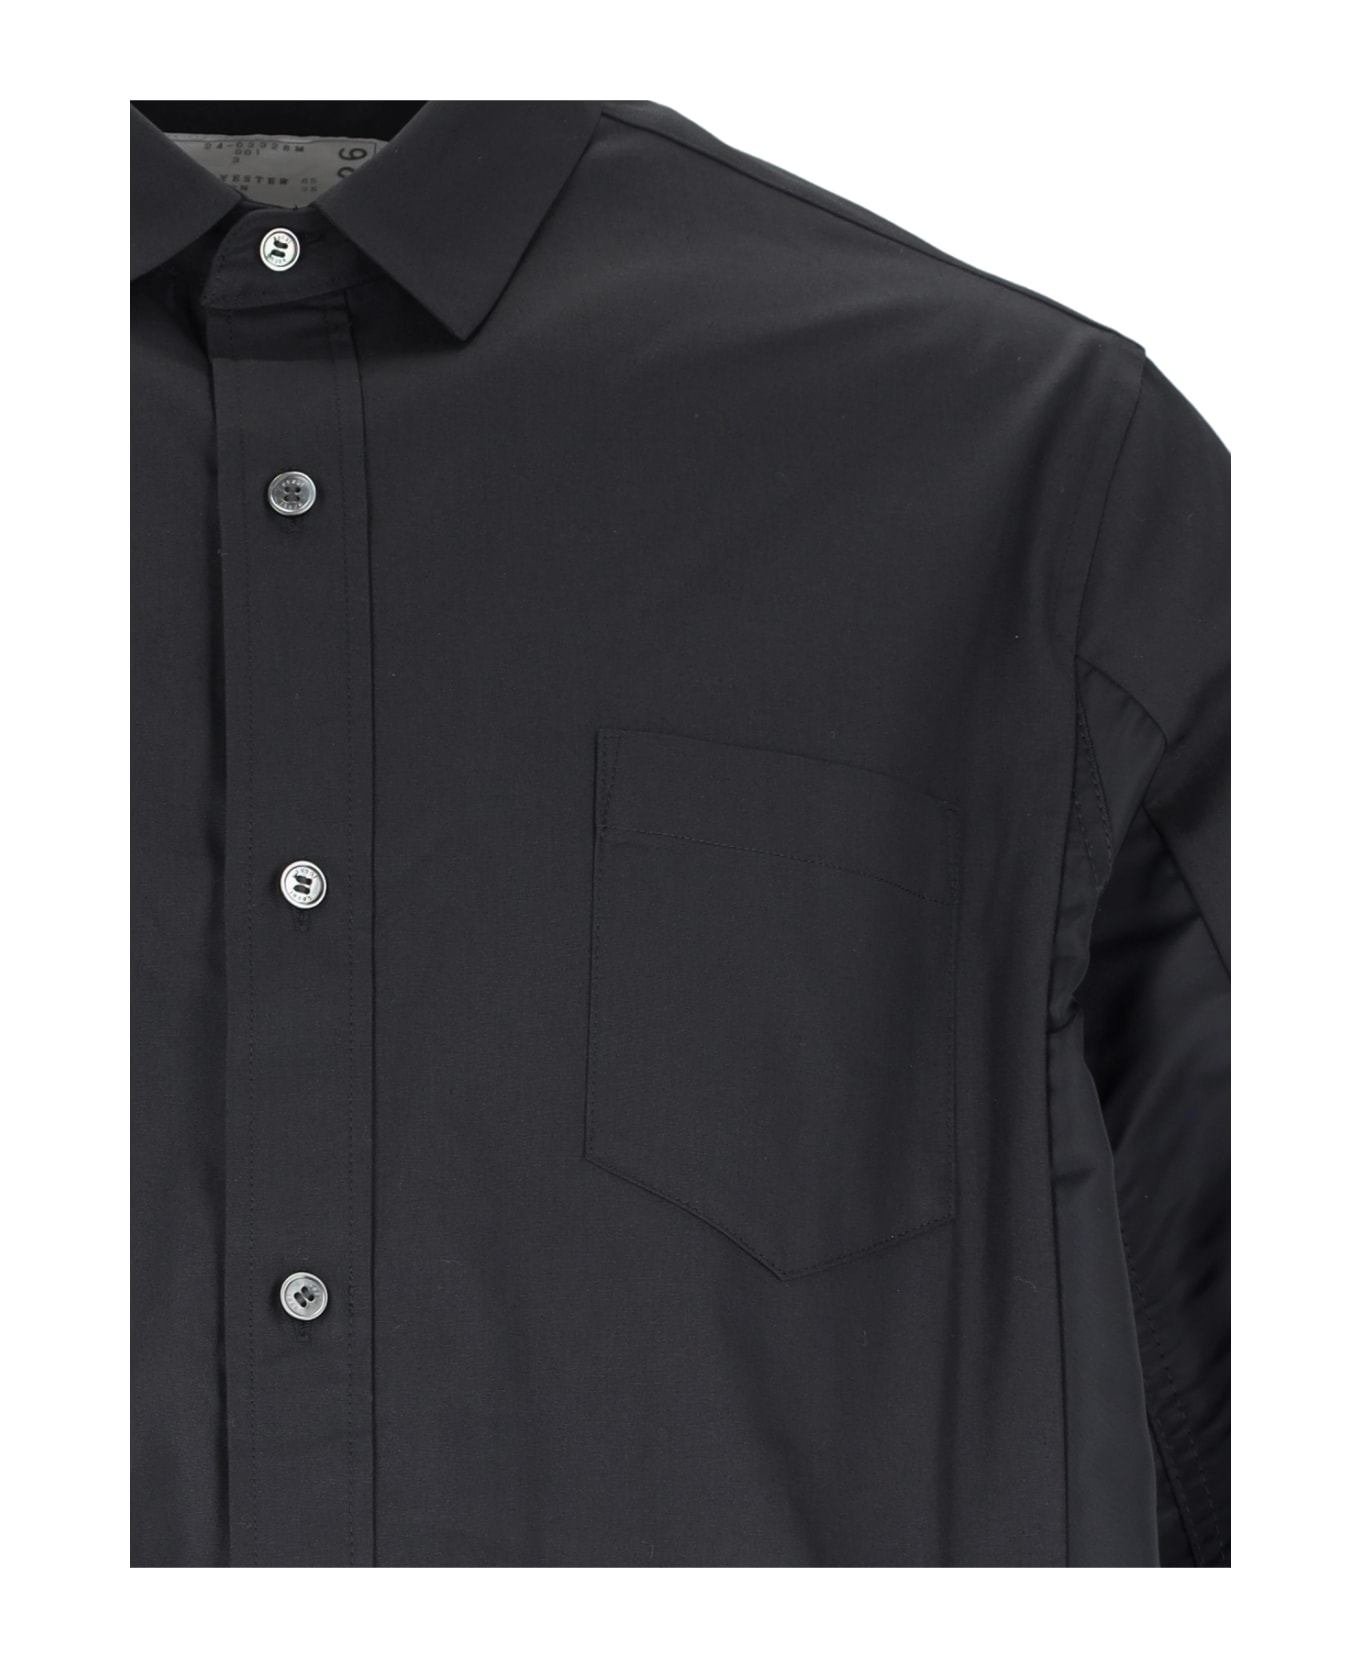 Sacai Nylon Detail Shirt - Black